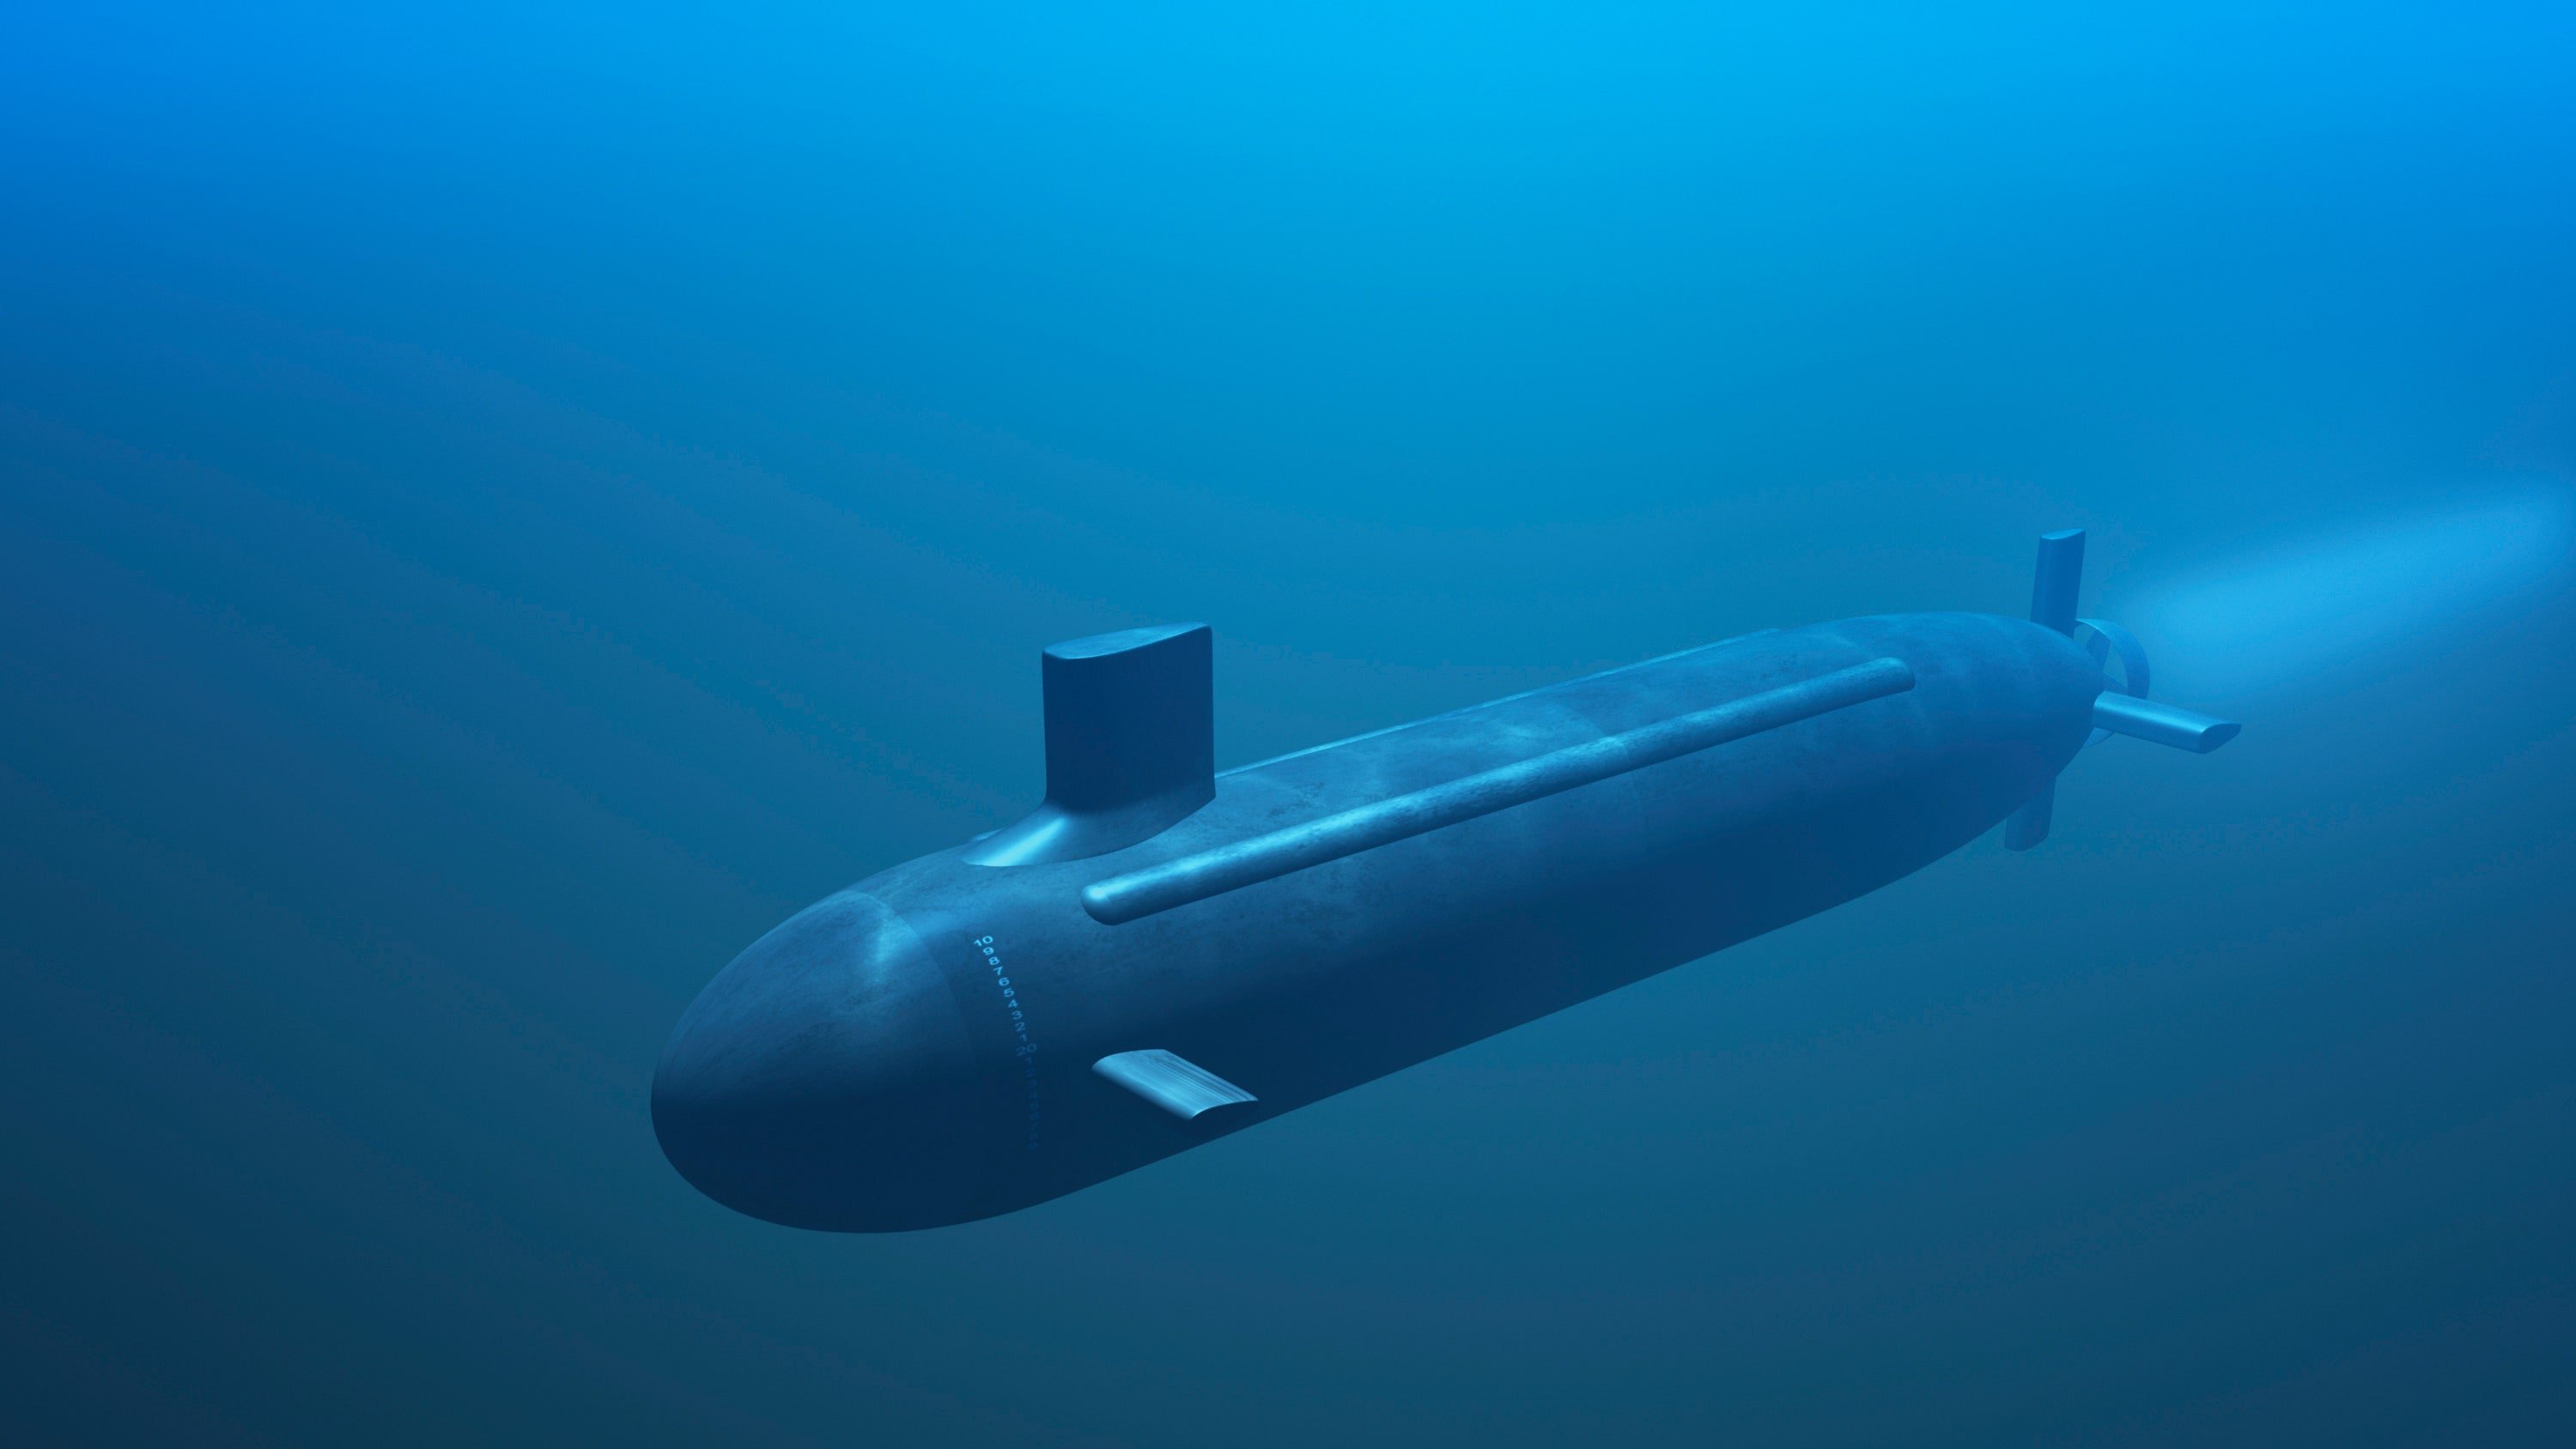 Большая торпеда. Подводная лодка субмарина. Посейдон подводная лодка. Торпеда противокорабельная. Торпеда кит 65-76 калибра 650 мм.